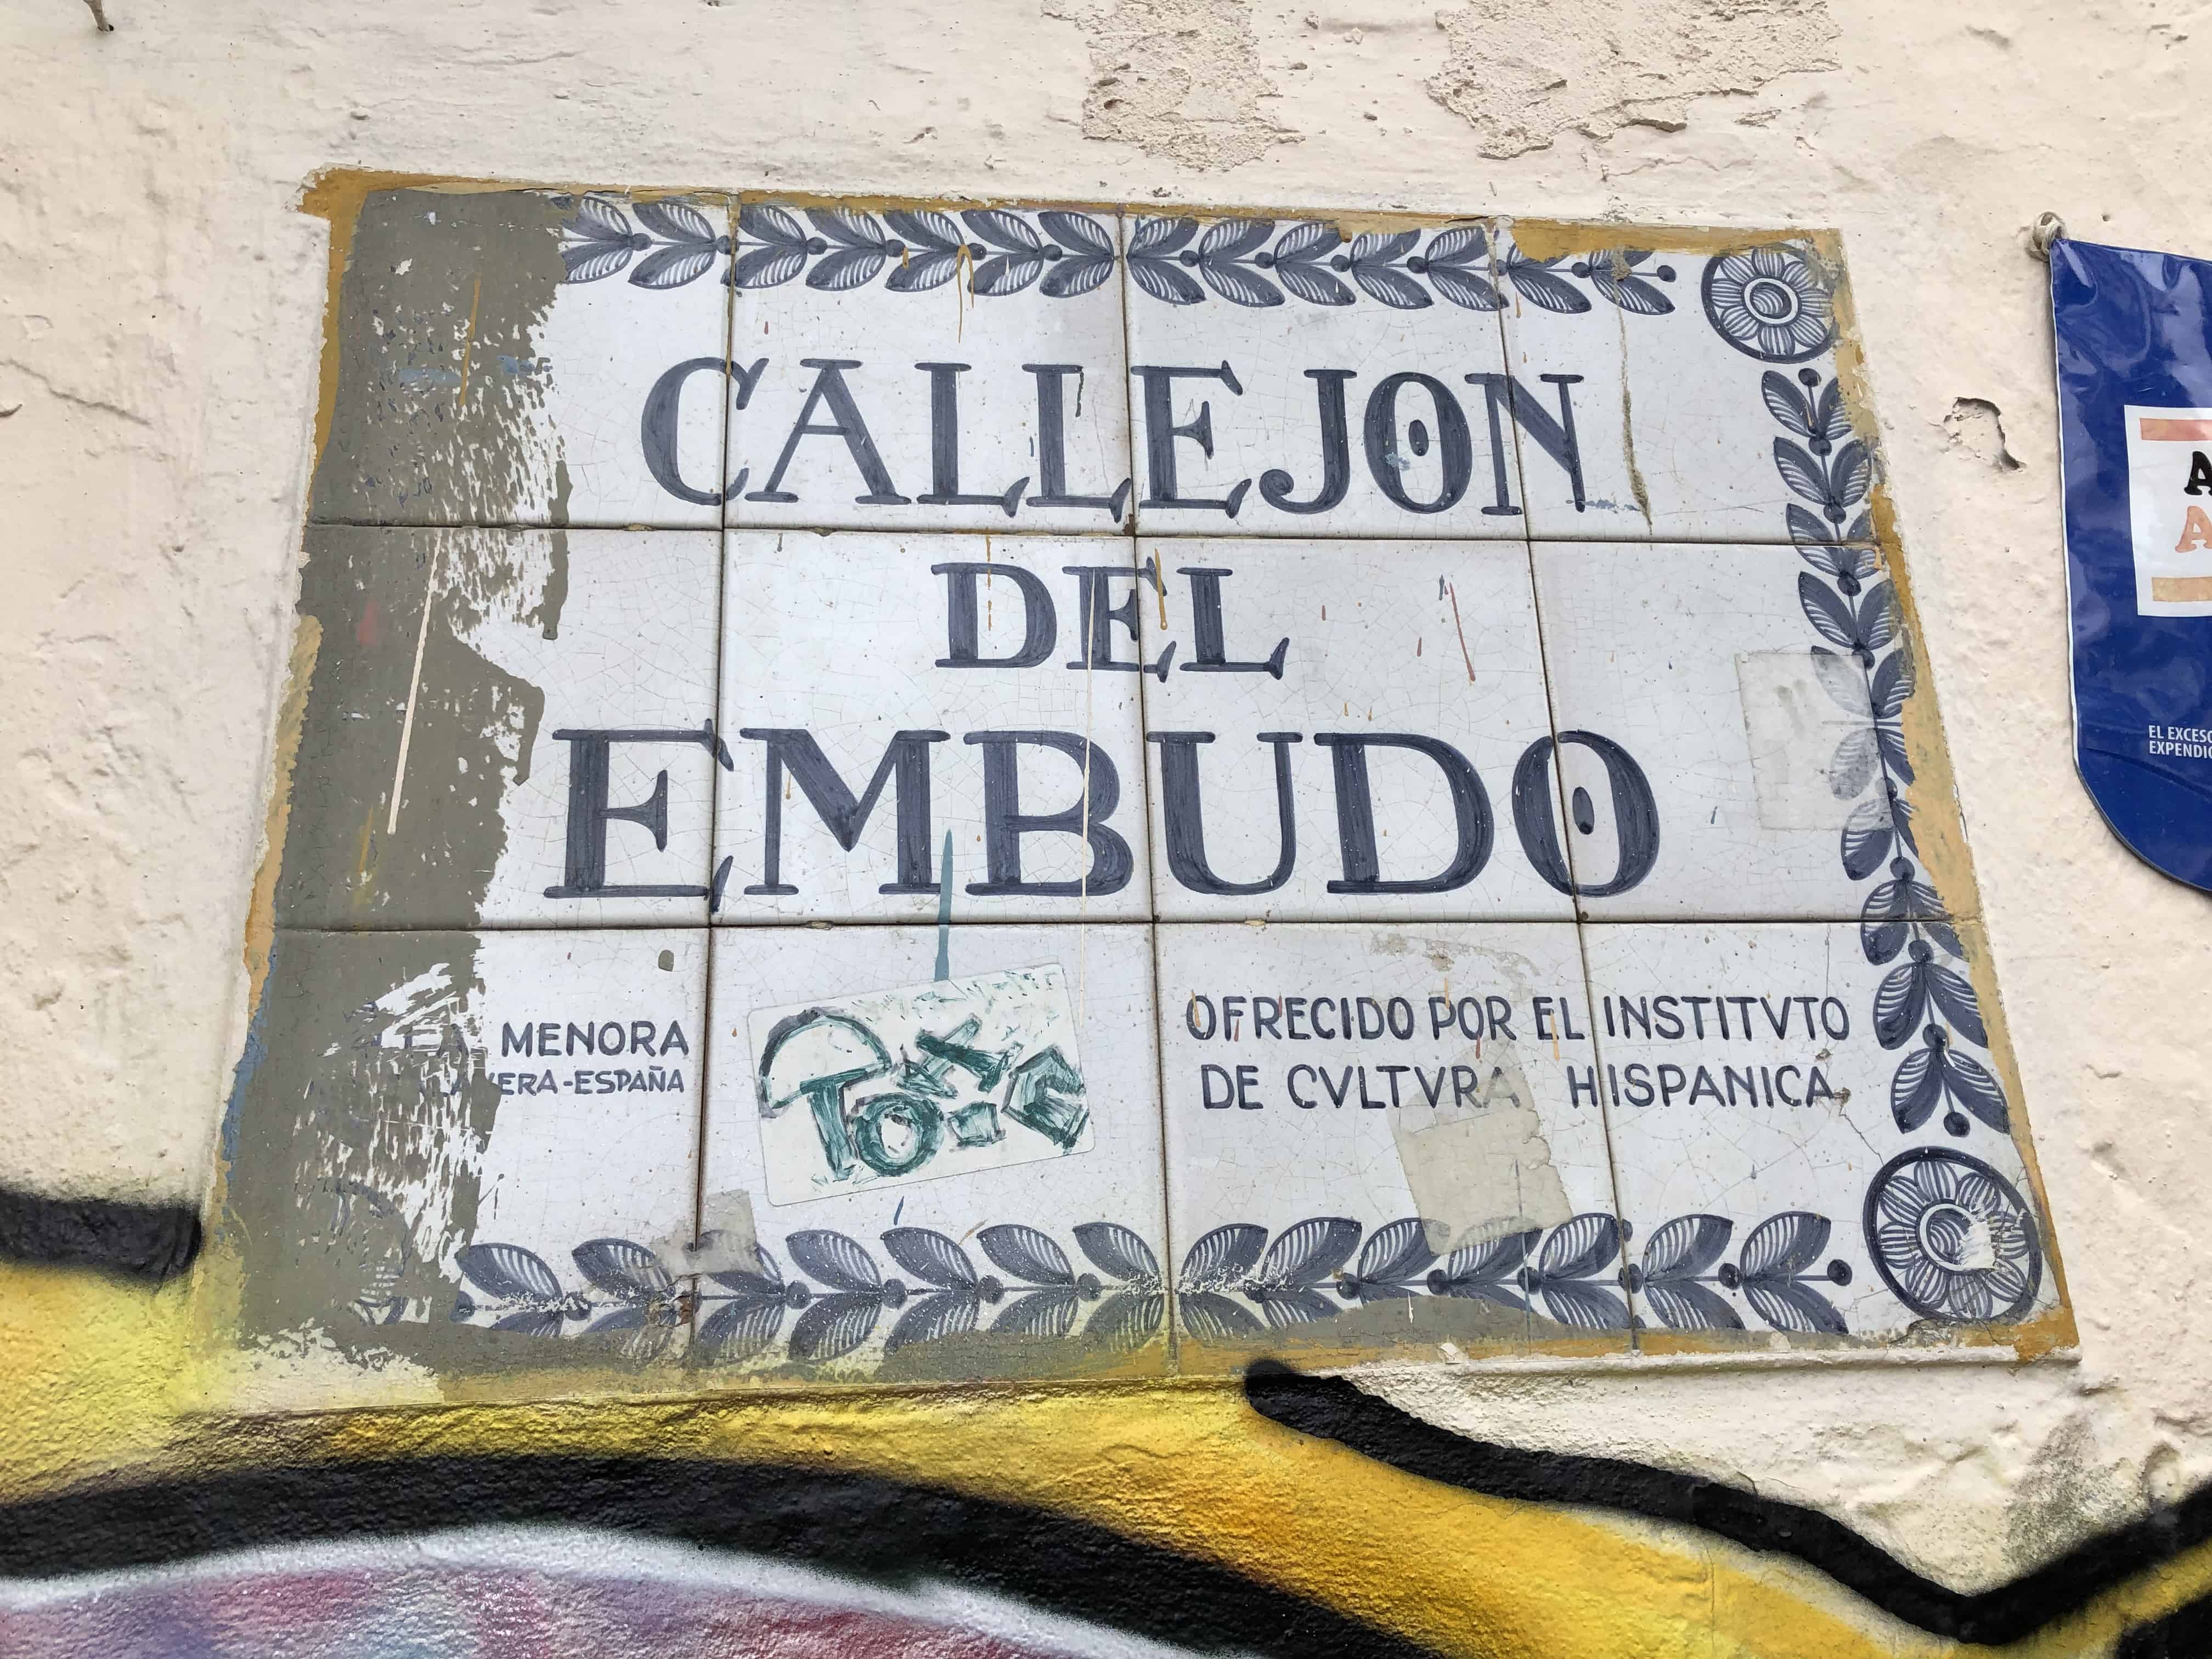 Callejón del Embudo in La Candelaria, Bogotá, Colombia